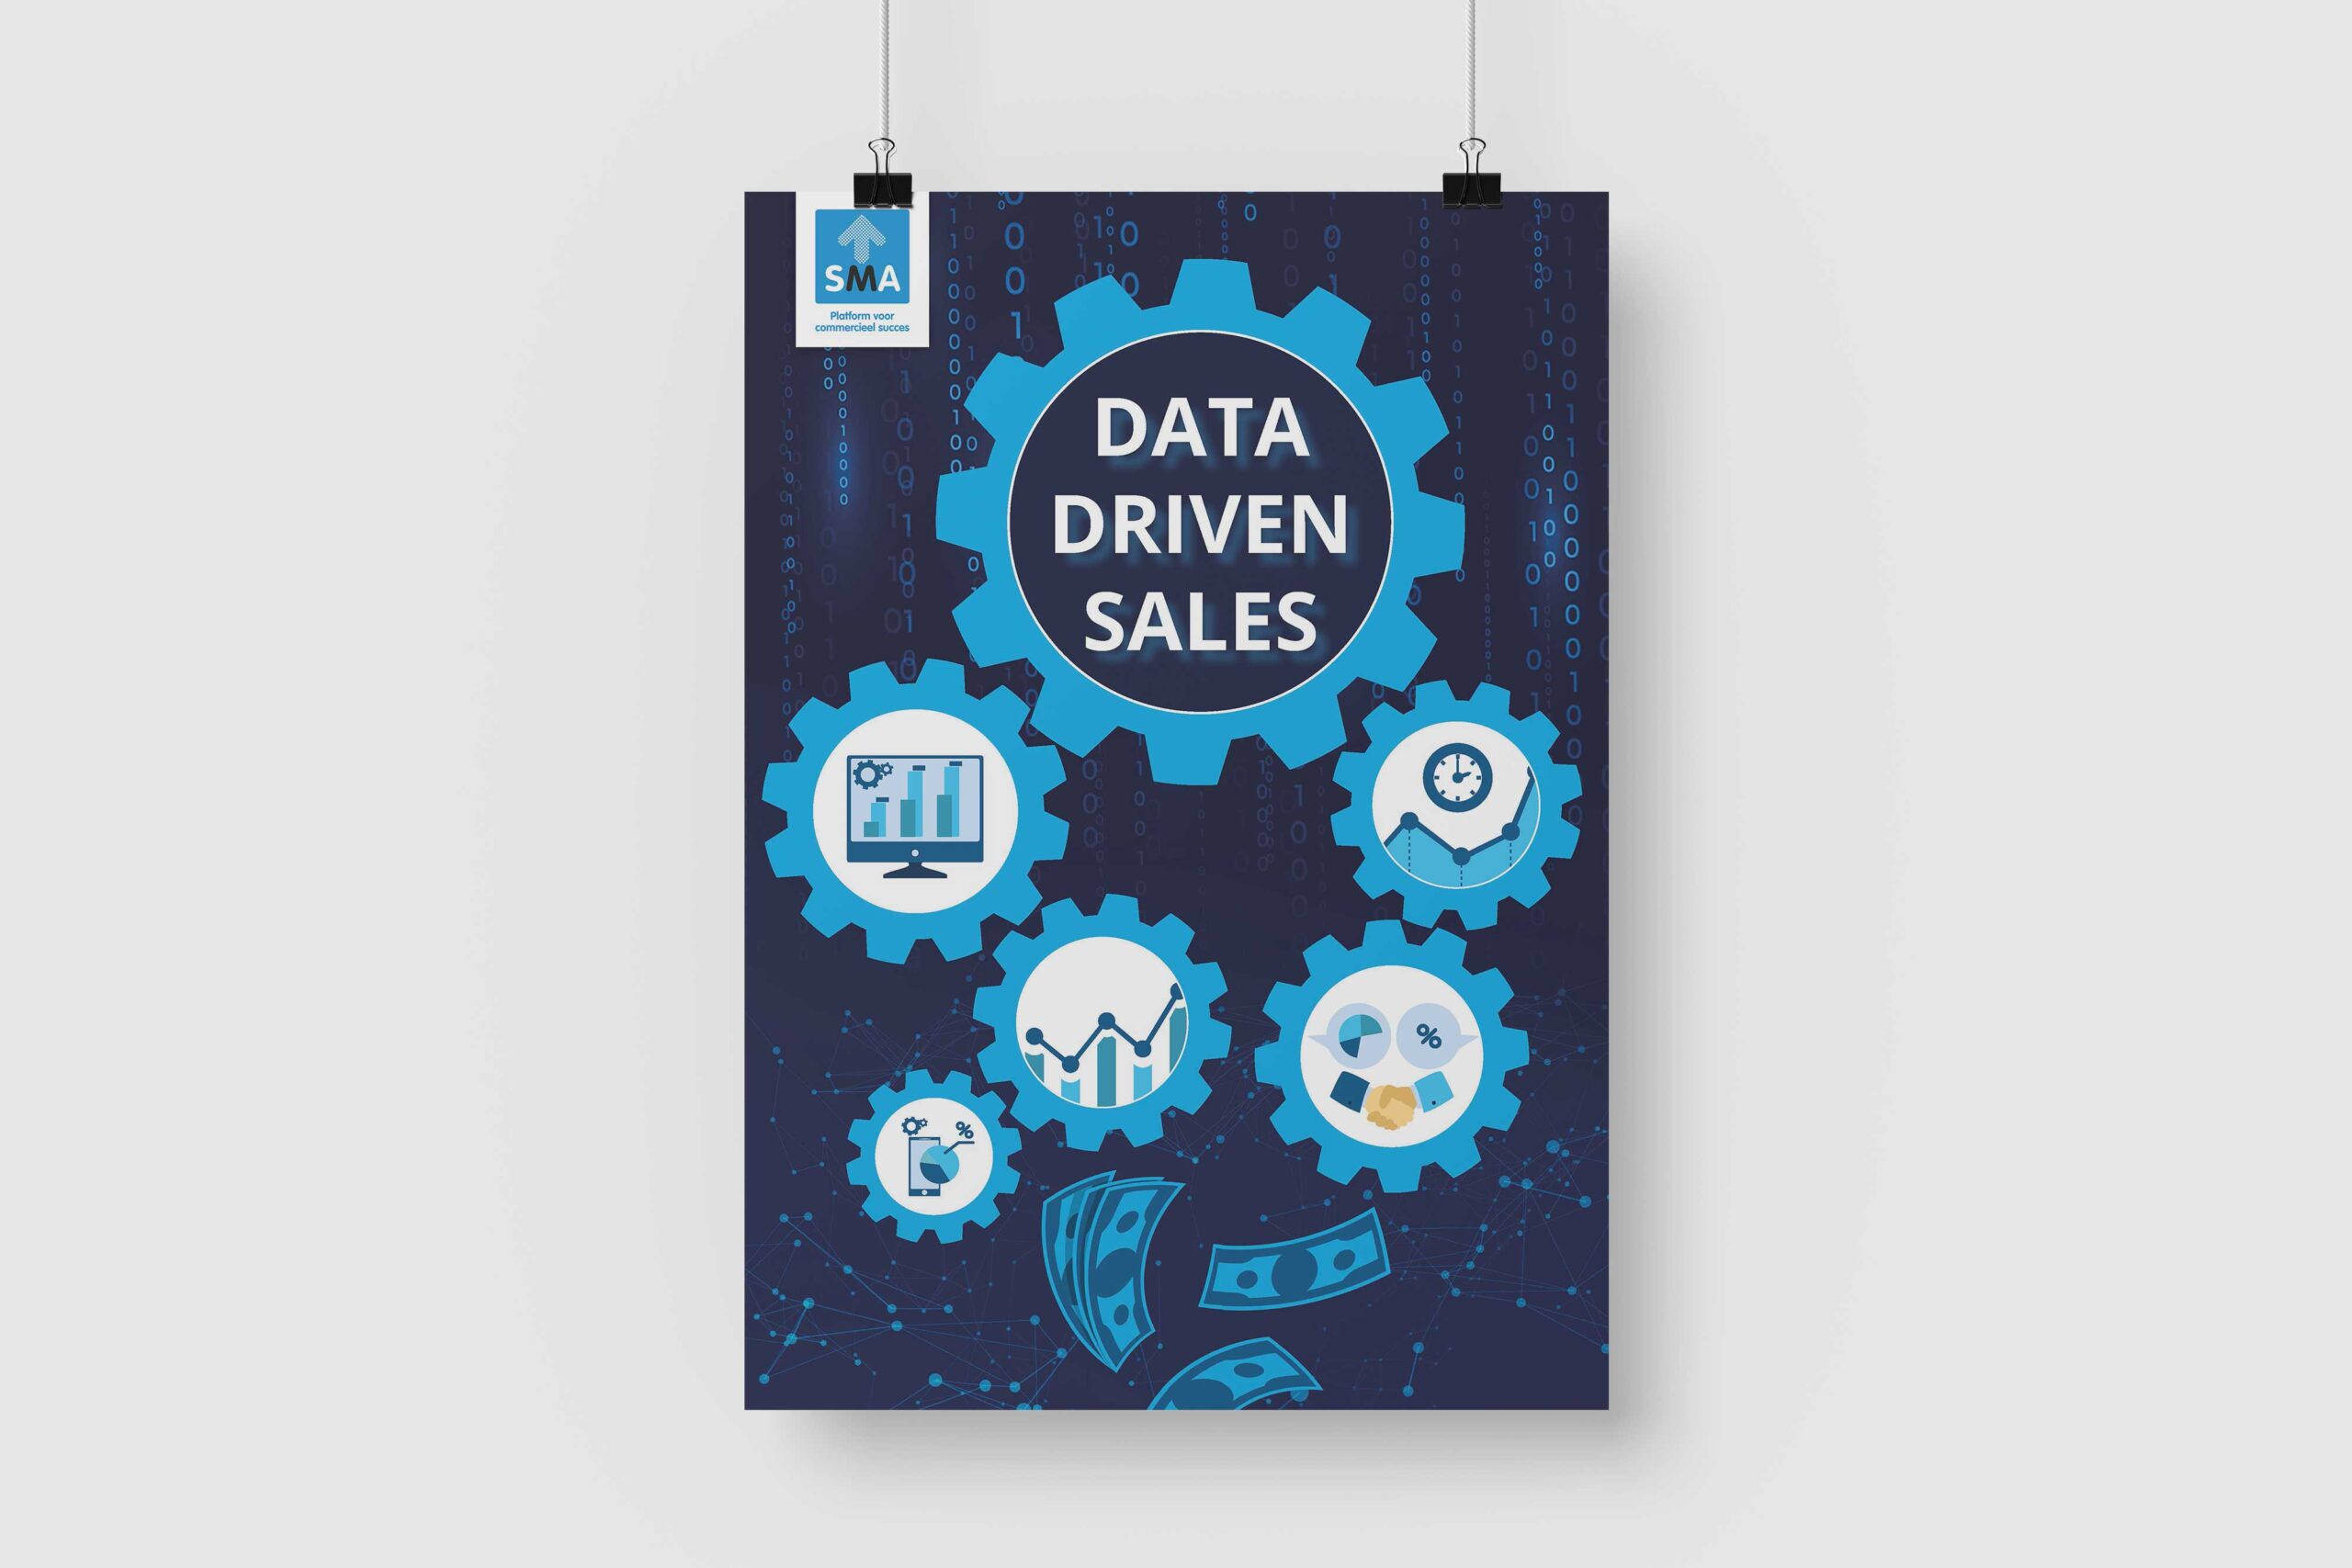 Een poster van SMA met de tekst "Data Driven Sales"